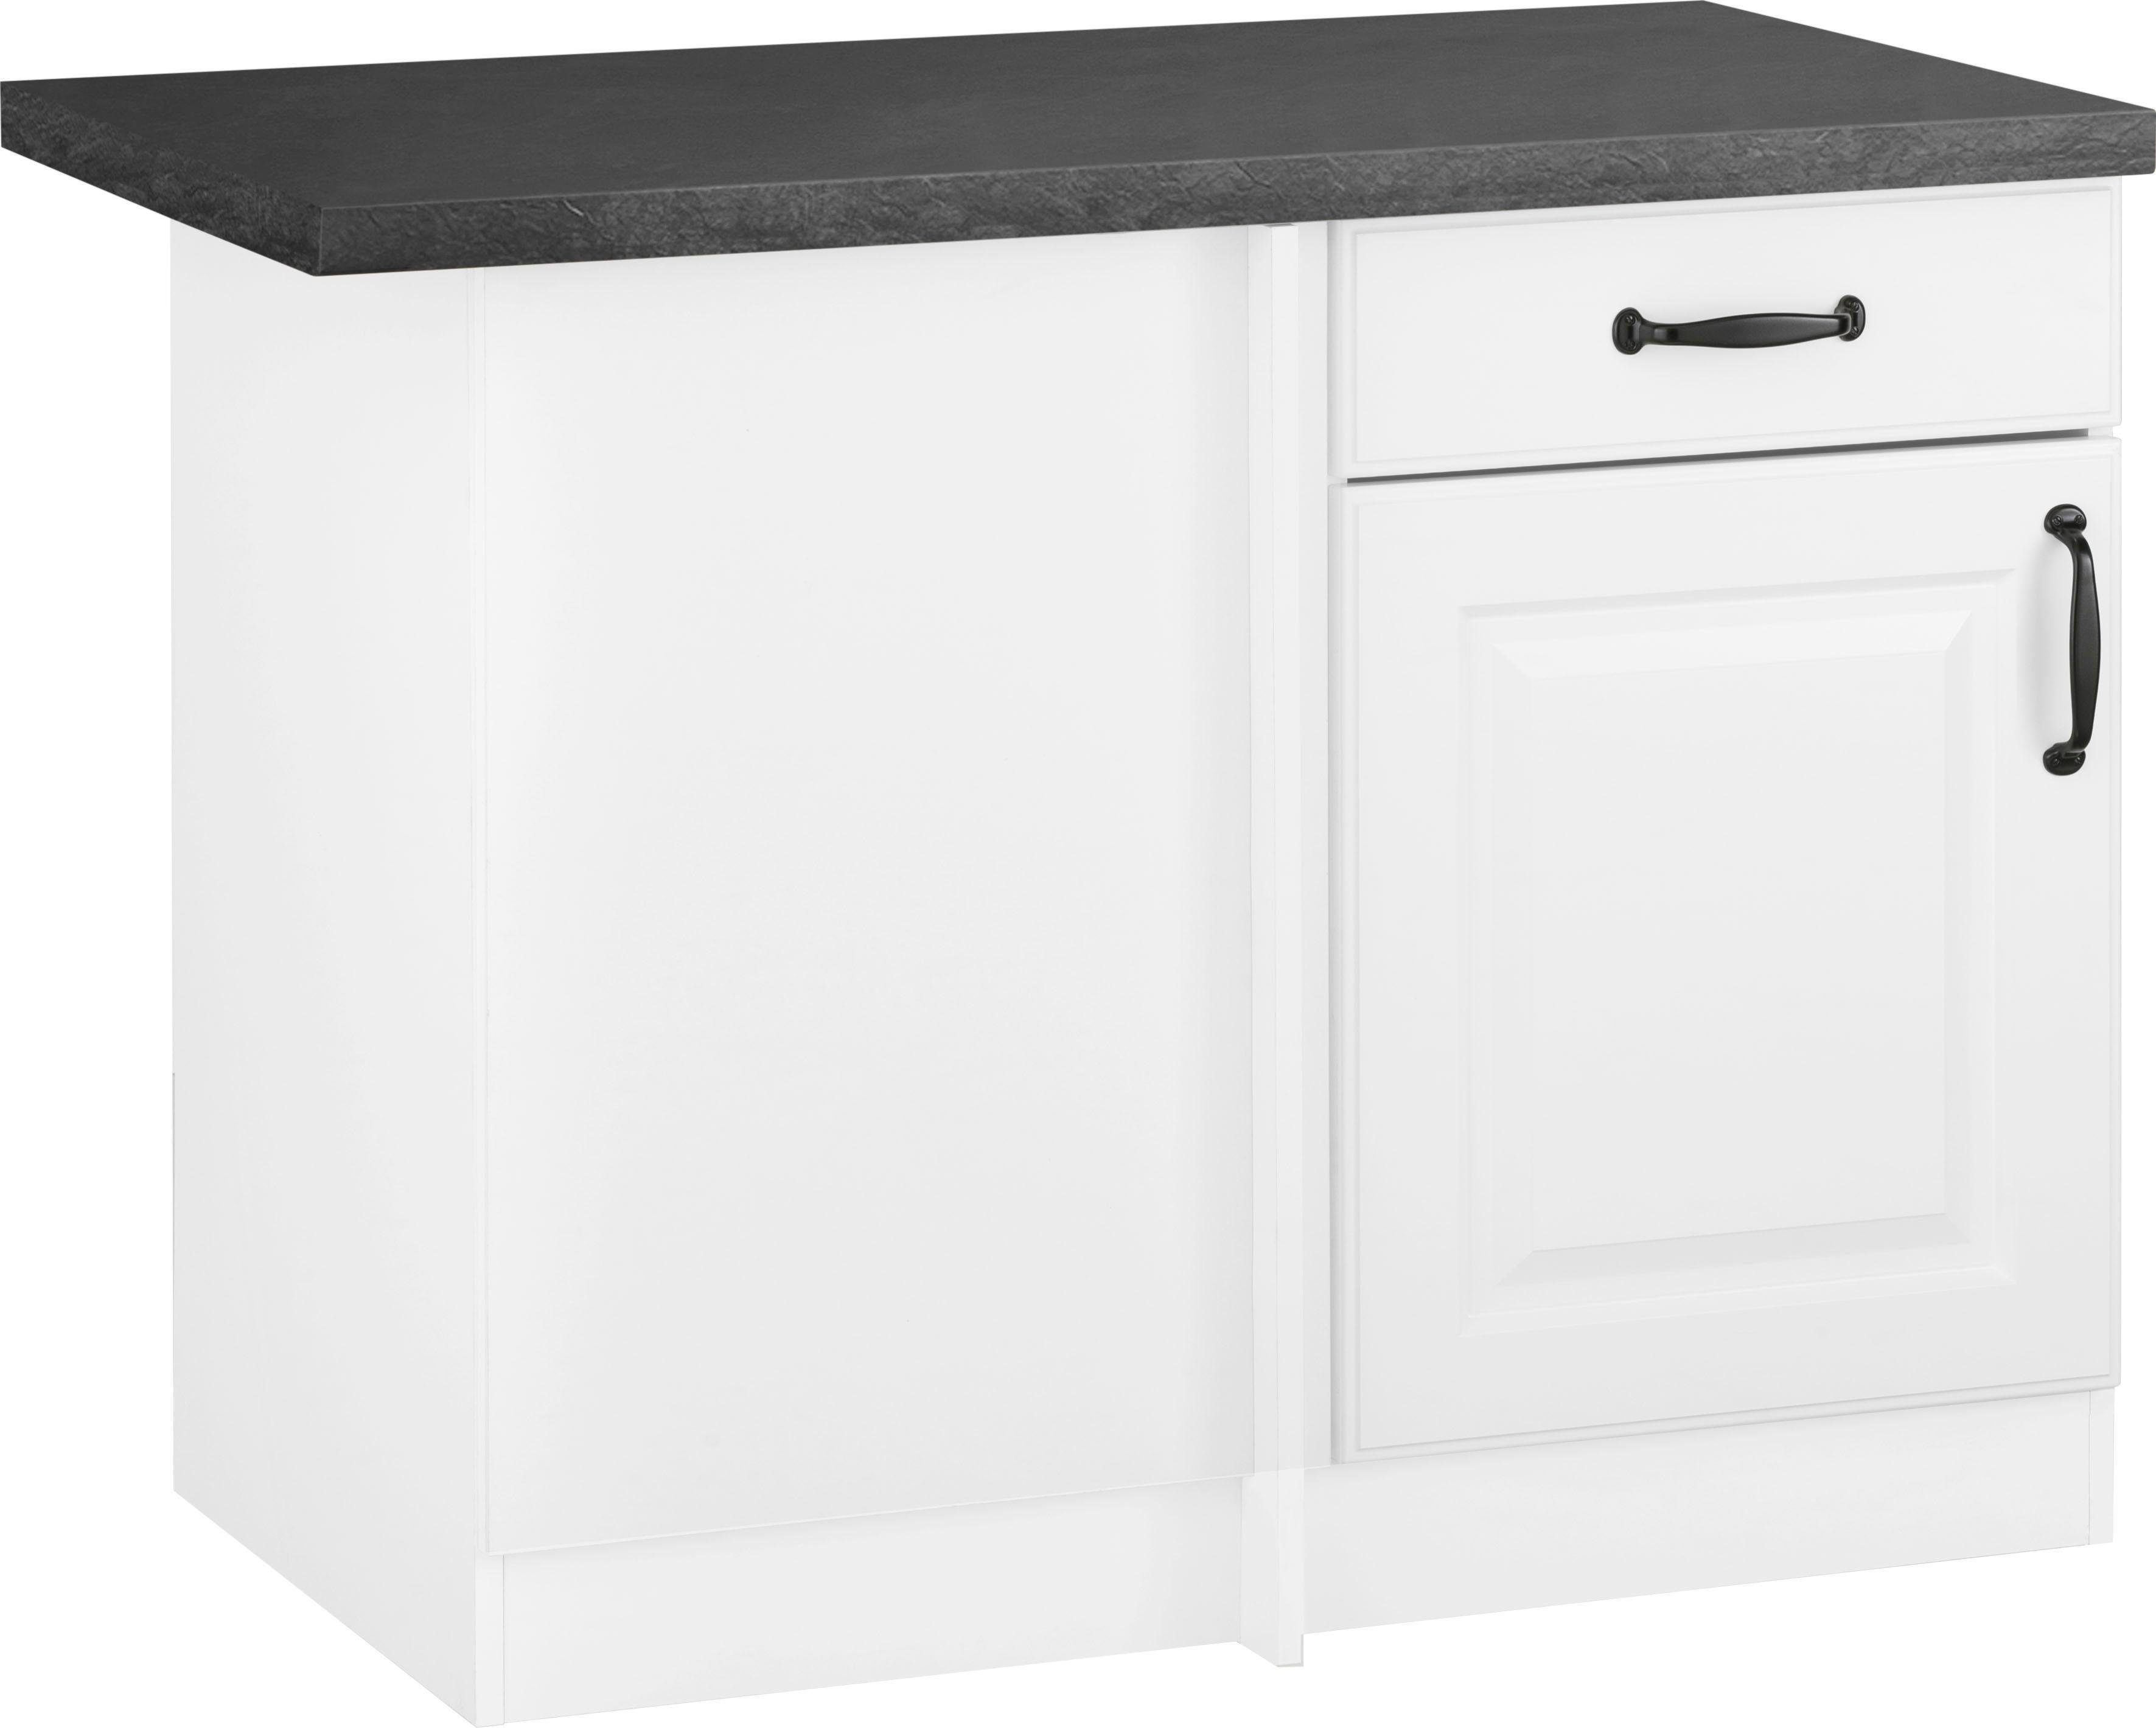 wiho Küchen Eckunterschrank Erla 110 cm breit mit Kassettenfront weiß/granit schwarz | weiß